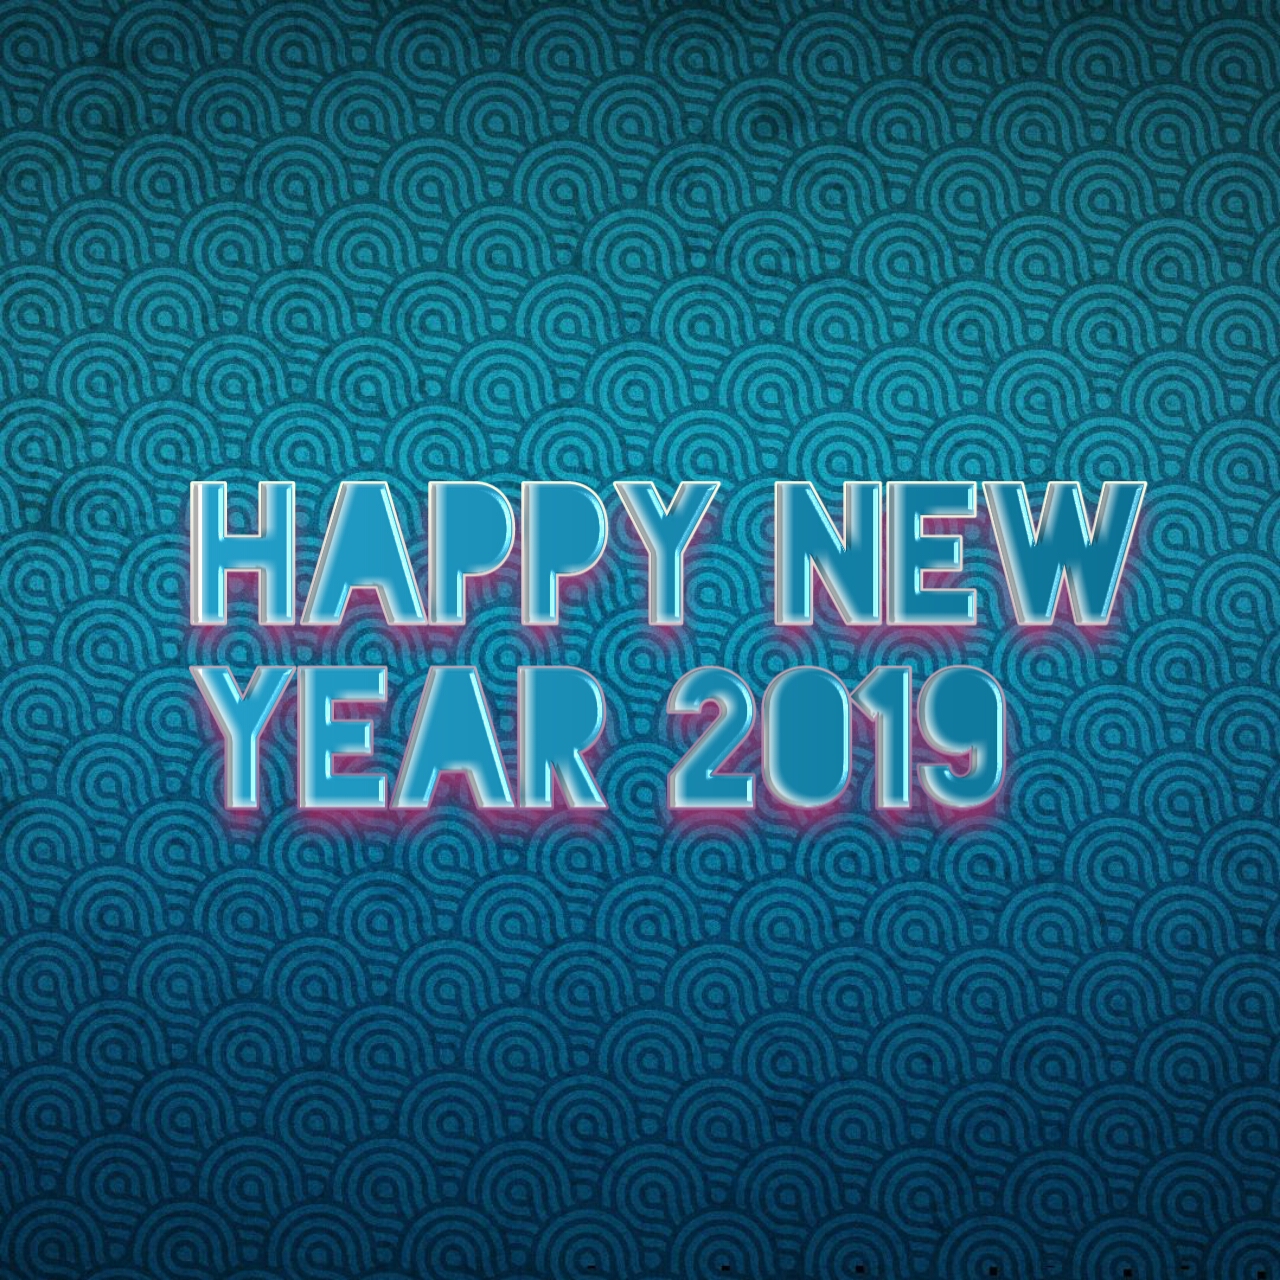 Kumpulan Ucapan Gambar Selamat Tahun Baru 2019 Happy New Year